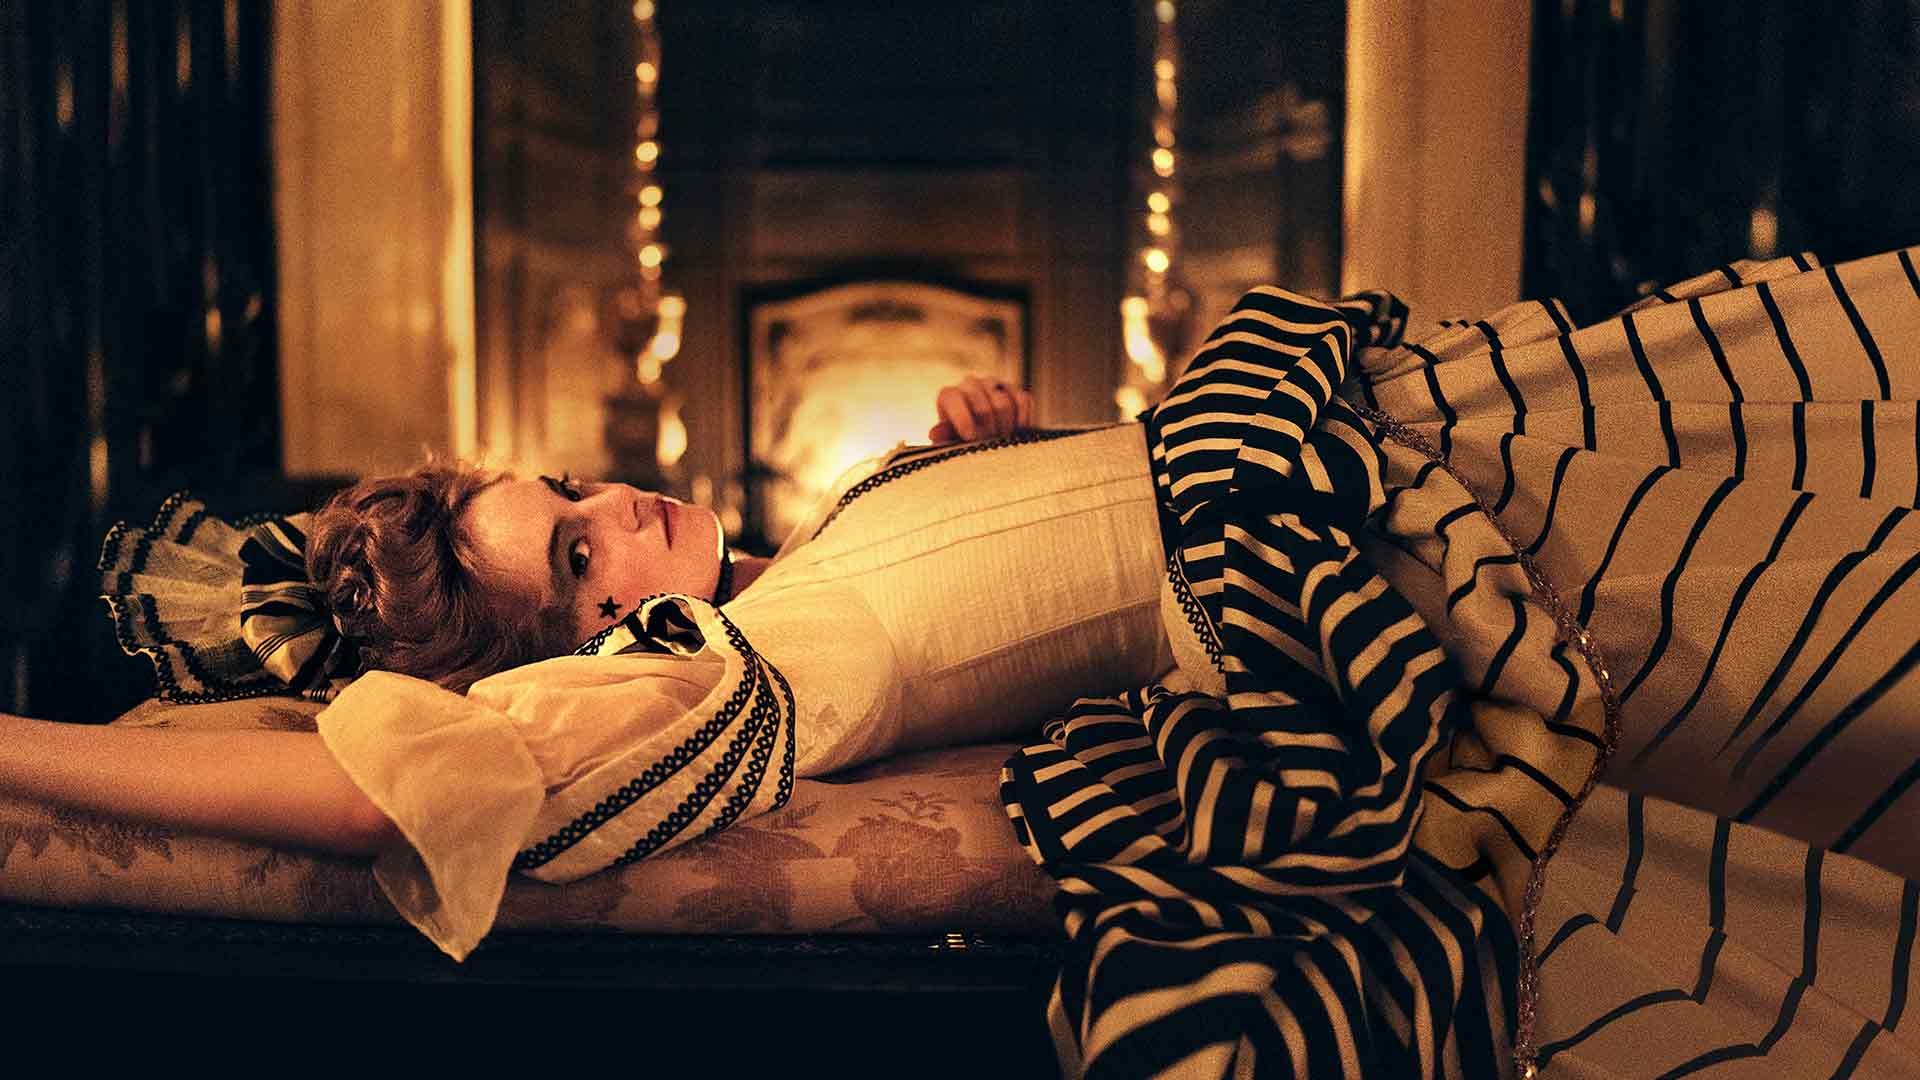 Cruella': Emma Stone's fashion kills - even when it's garbage